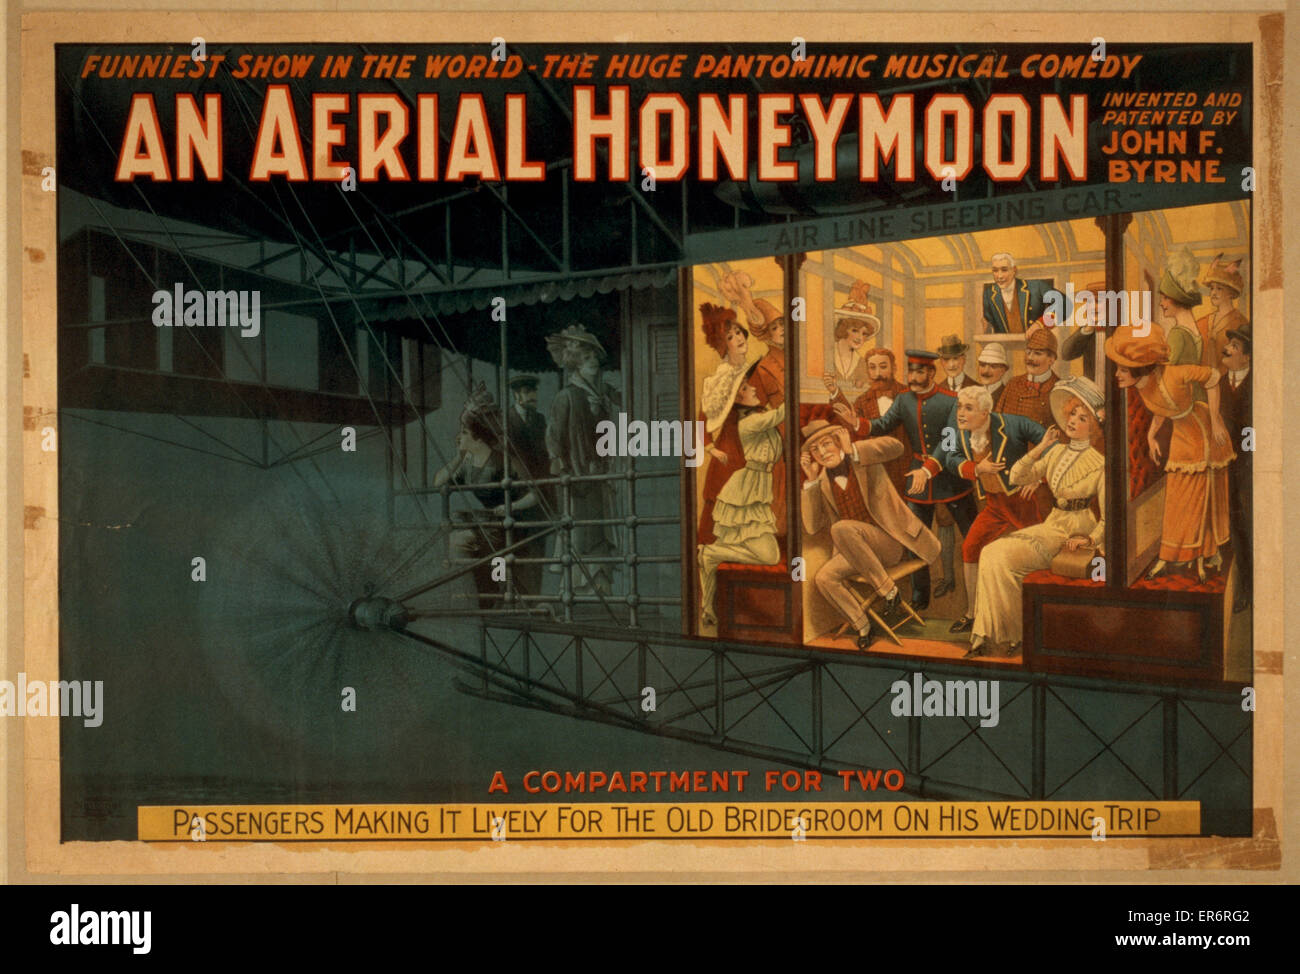 Una luna di miele aerea inventata e brevettata da John F. Byrne : Foto Stock